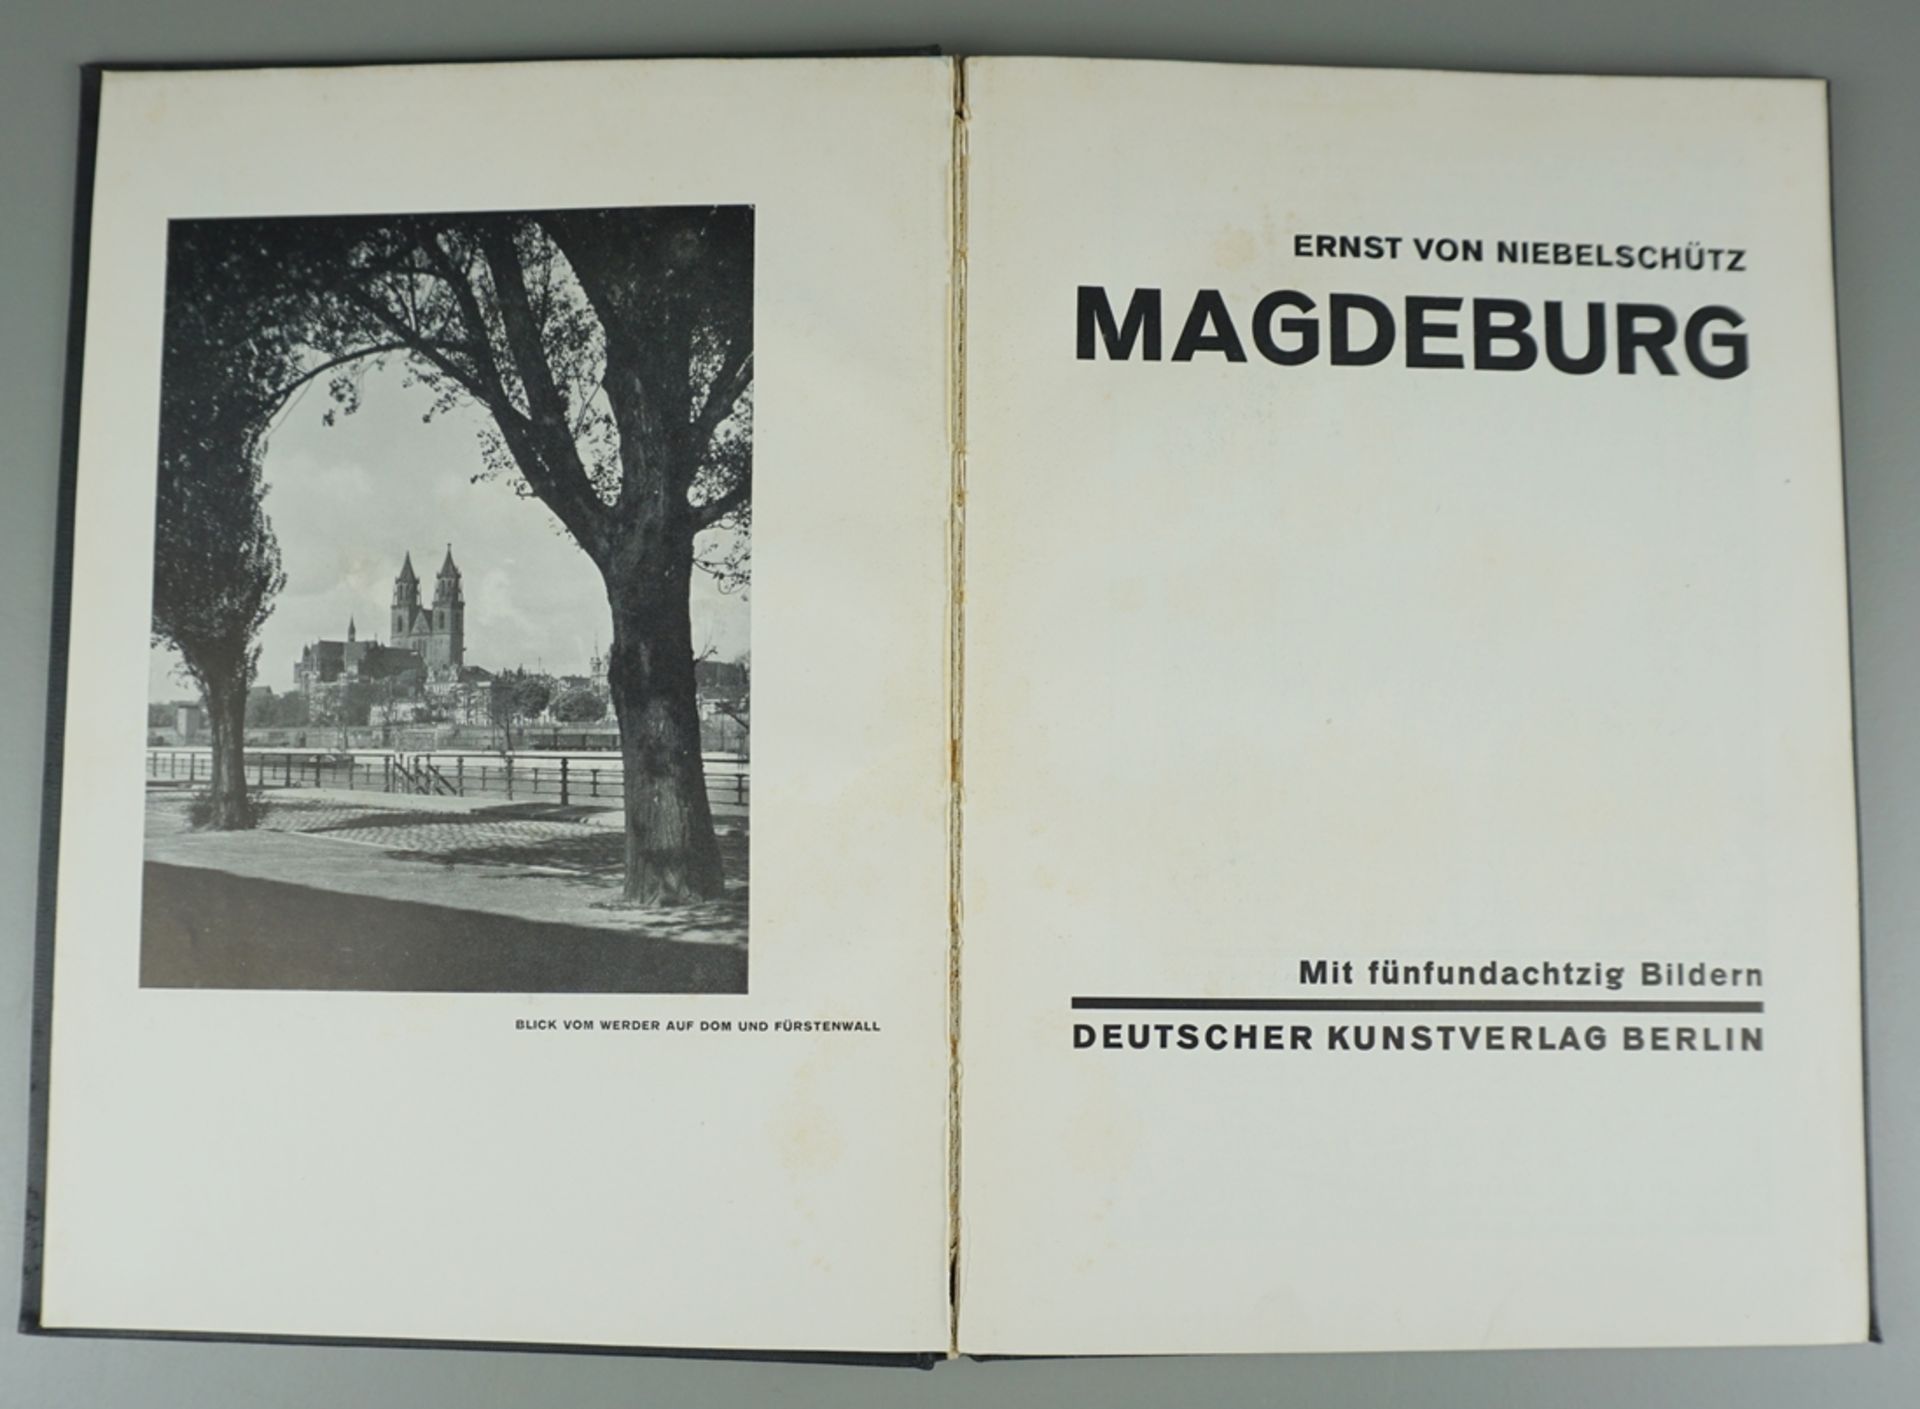 Magdeburg, Ernst von Niebelschütz, mit 85 Bildern, 1929 - Image 3 of 3